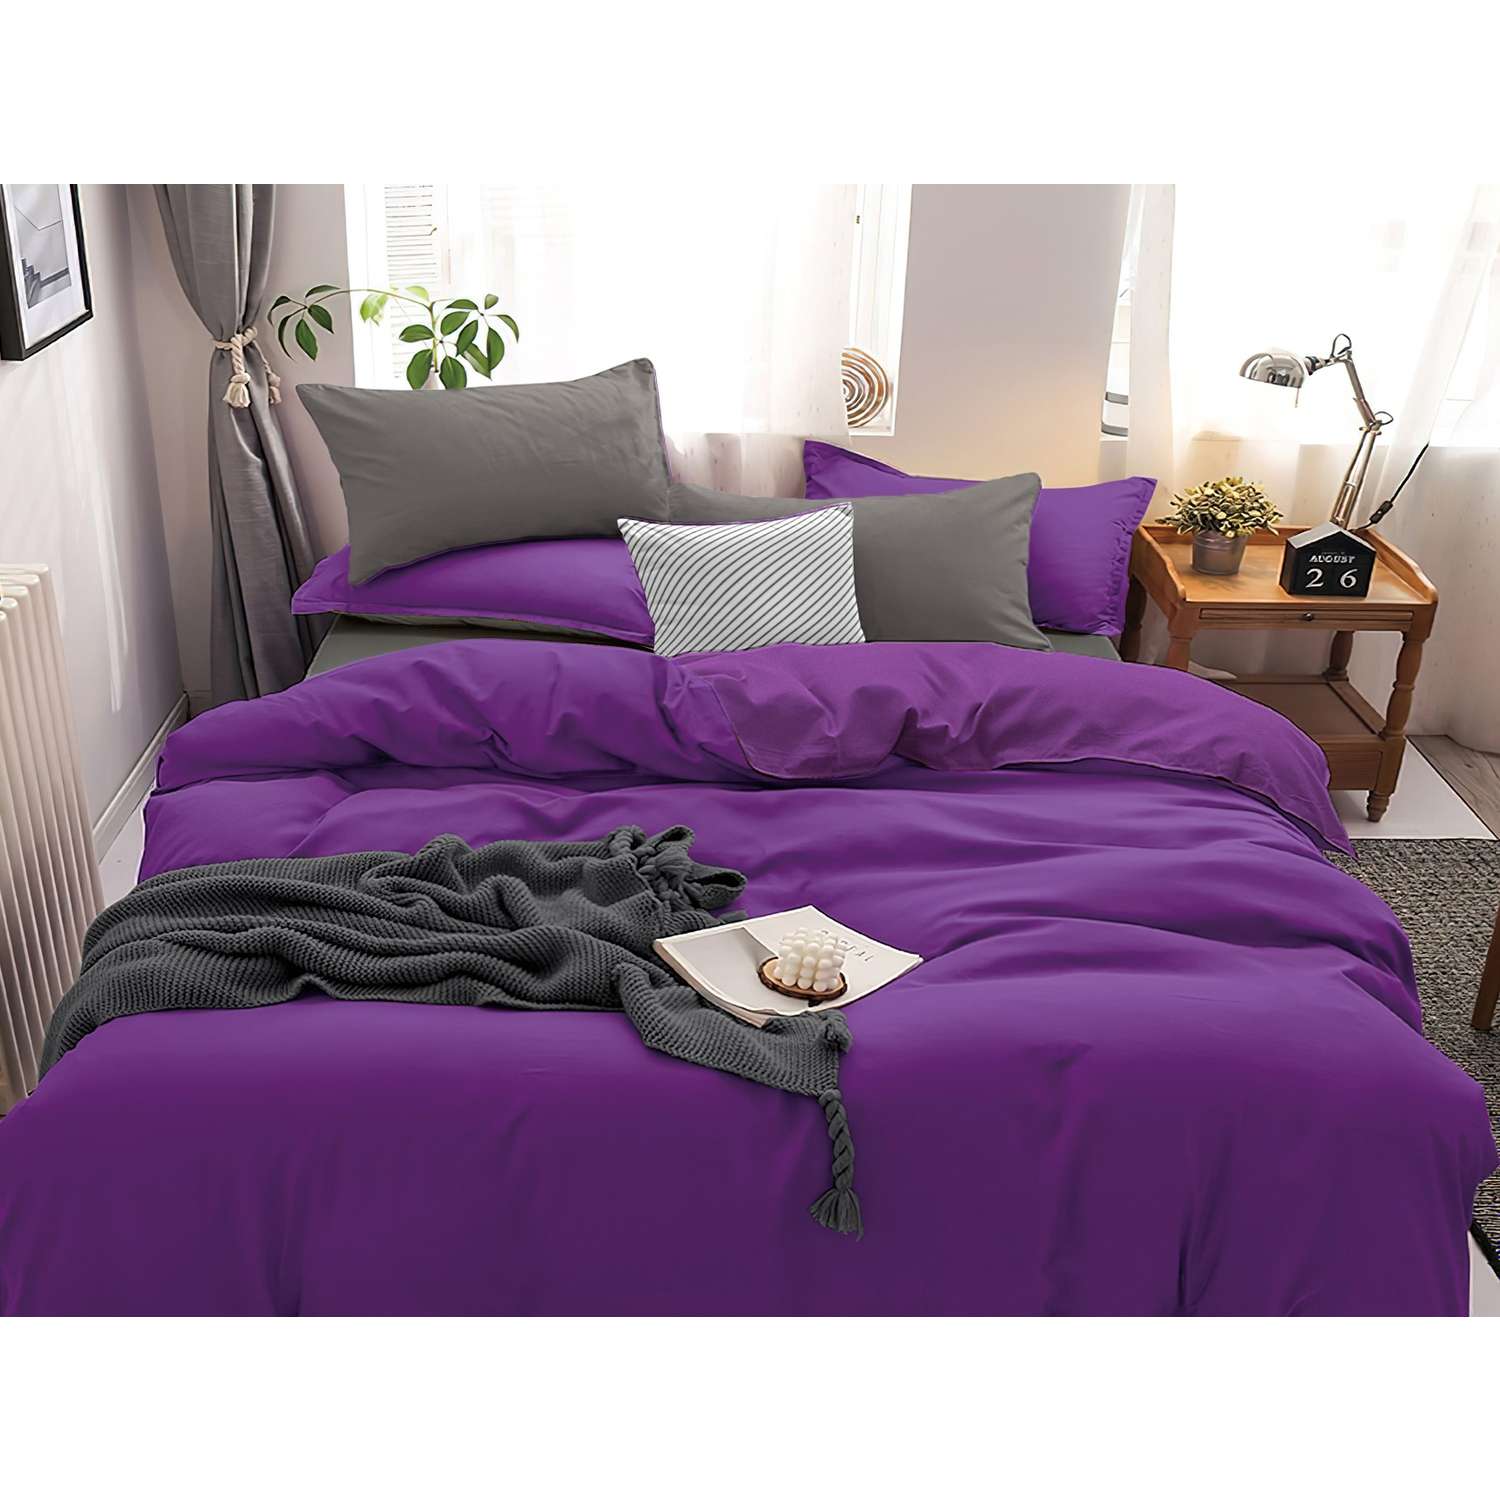 Комплект постельного белья PAVLine Манетти полисатин 2-спальный фиолетовый/серый S26 - фото 1